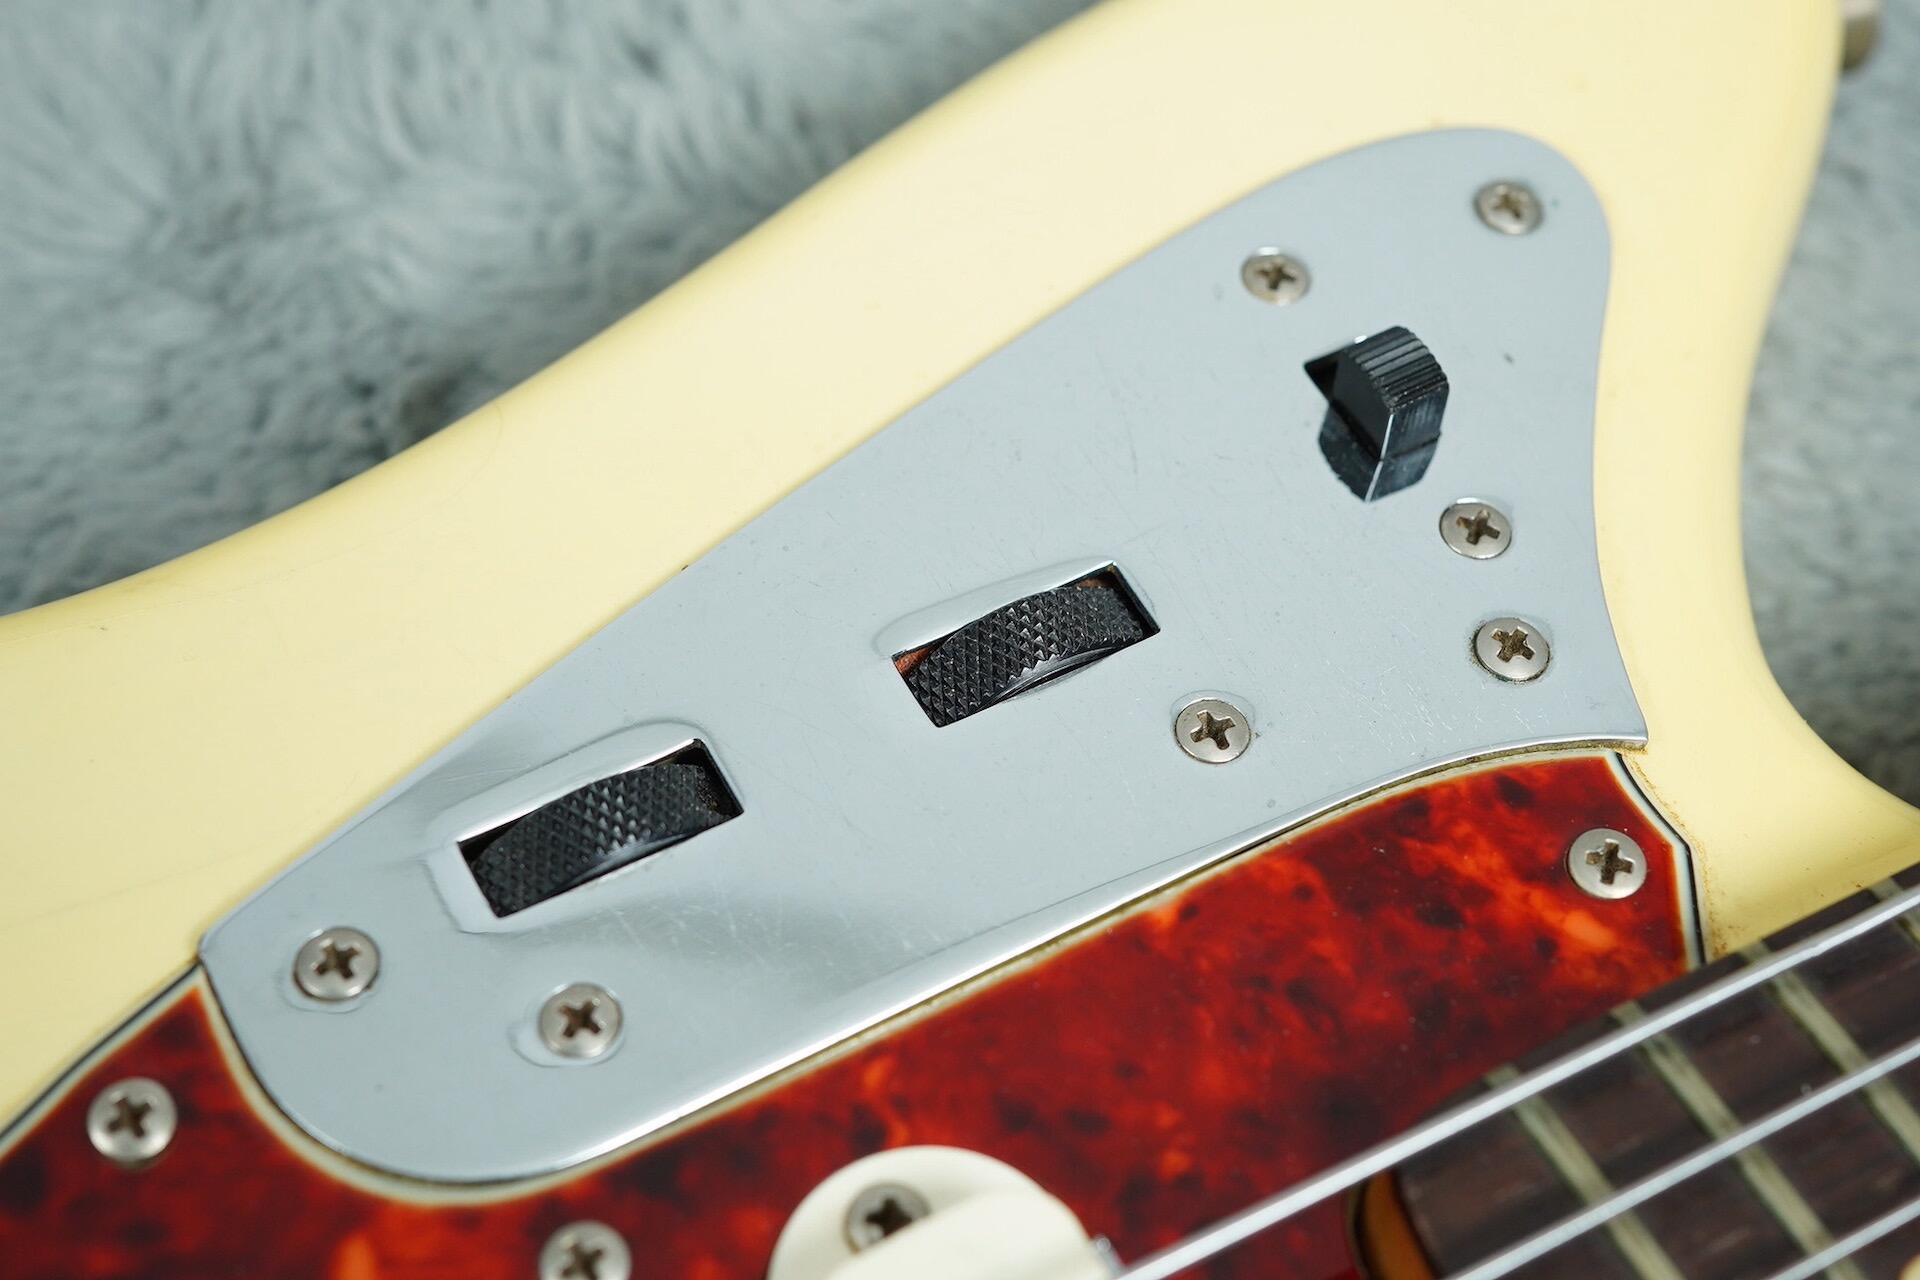 1965 Fender Jaguar Blonde